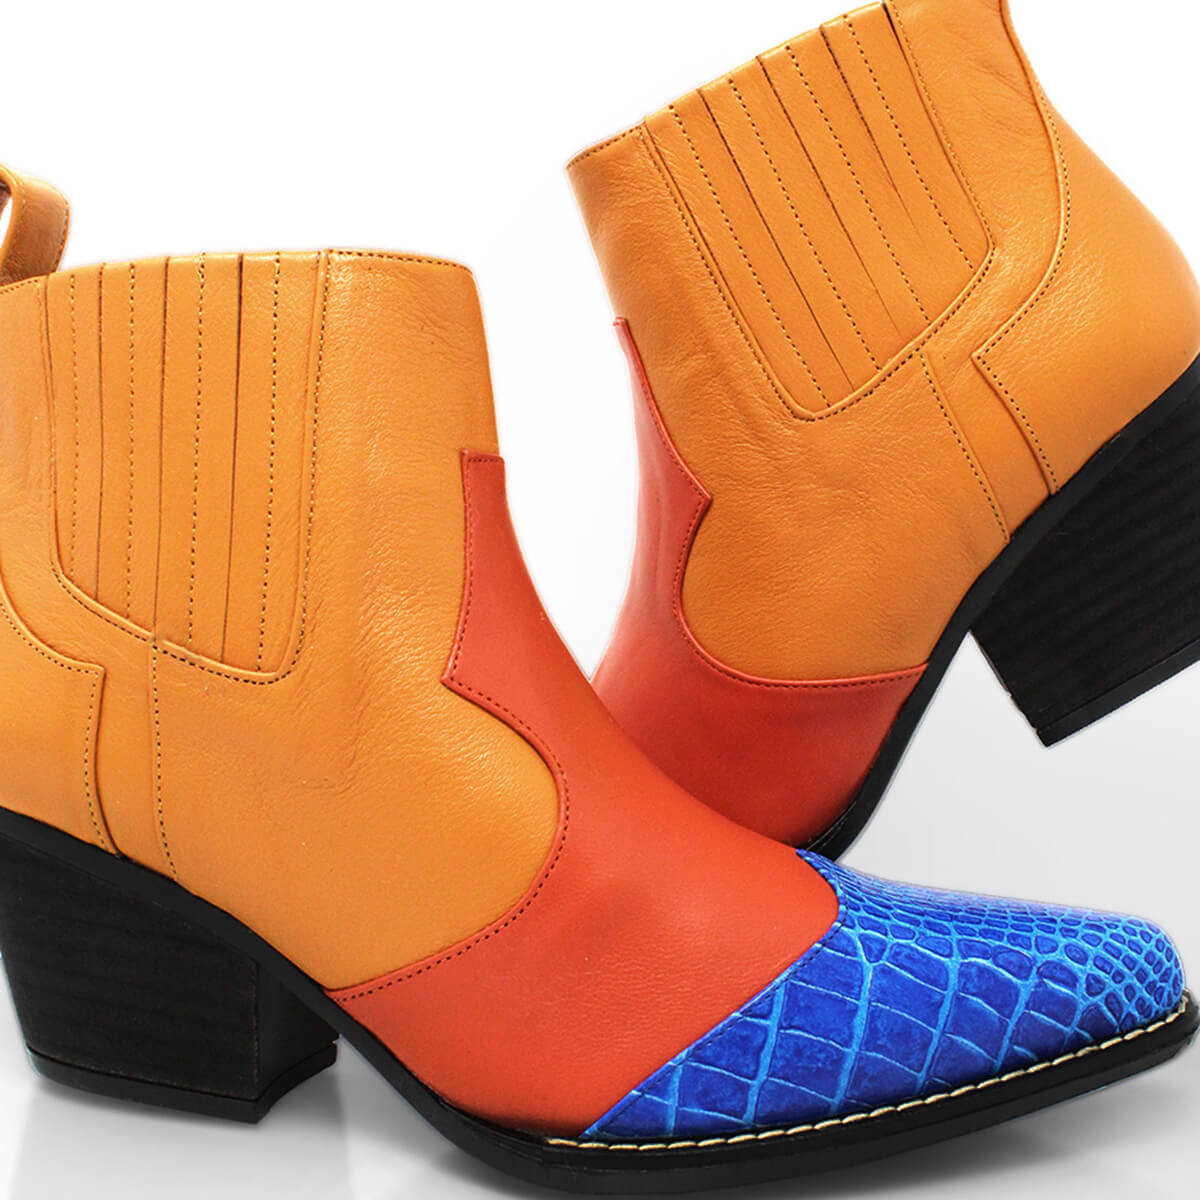 MADDIE 60 Edicion Limitada - Naranja y Azul Romero Zapato Bota Botin Tacon Bajo para Dama en Piel